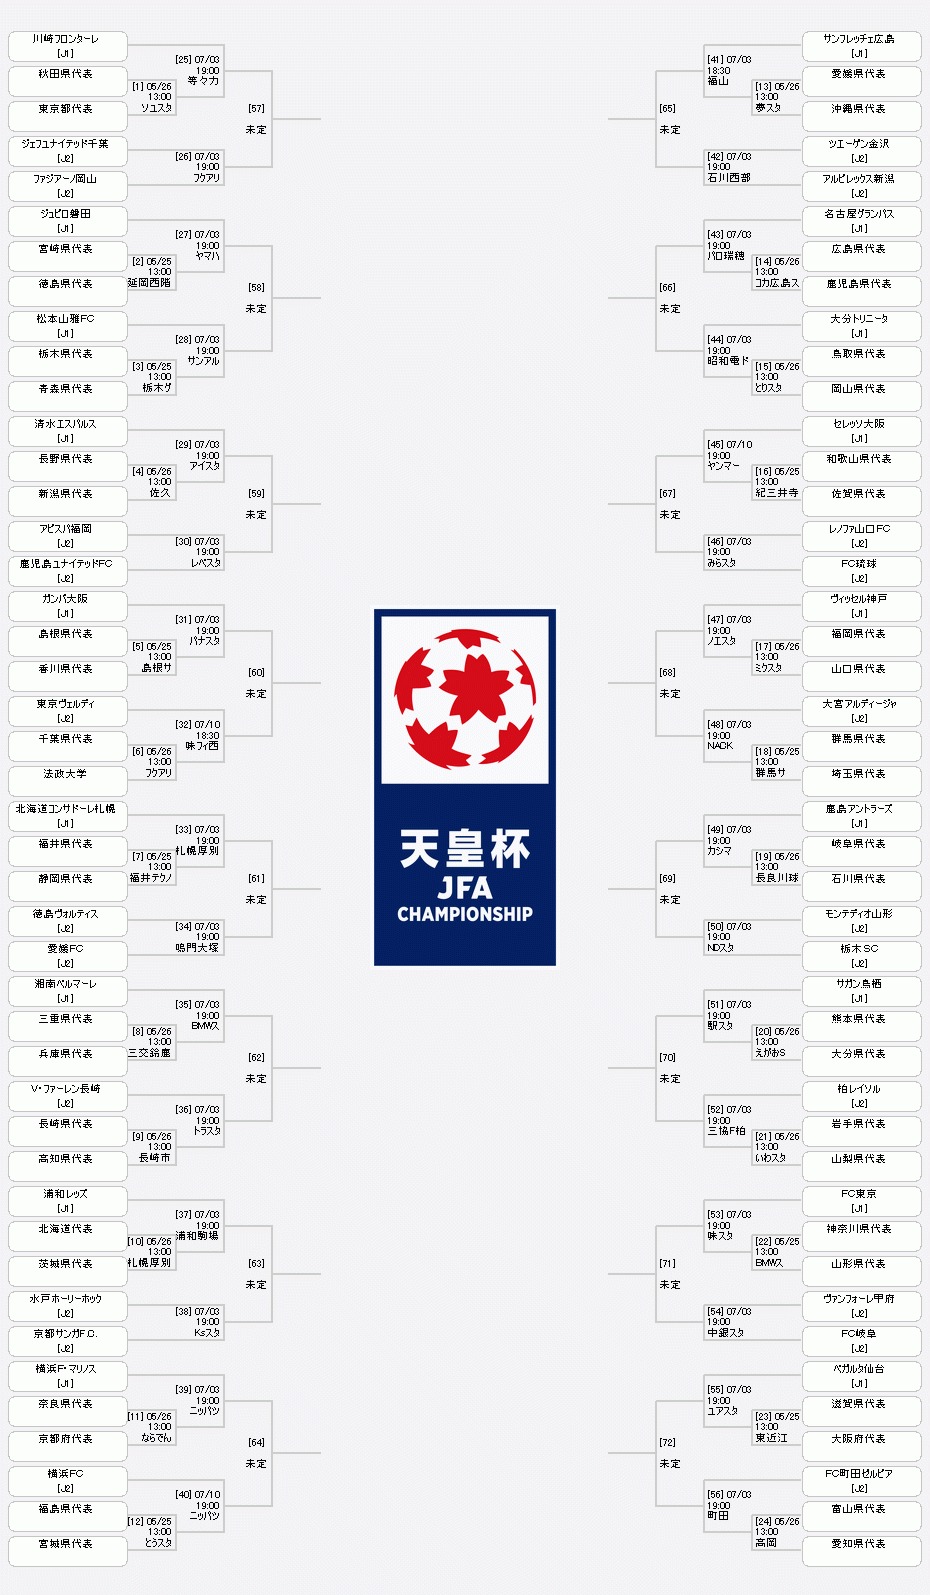 『天皇杯 JFA 第99回全日本サッカー選手権大会』の組み合わせ表